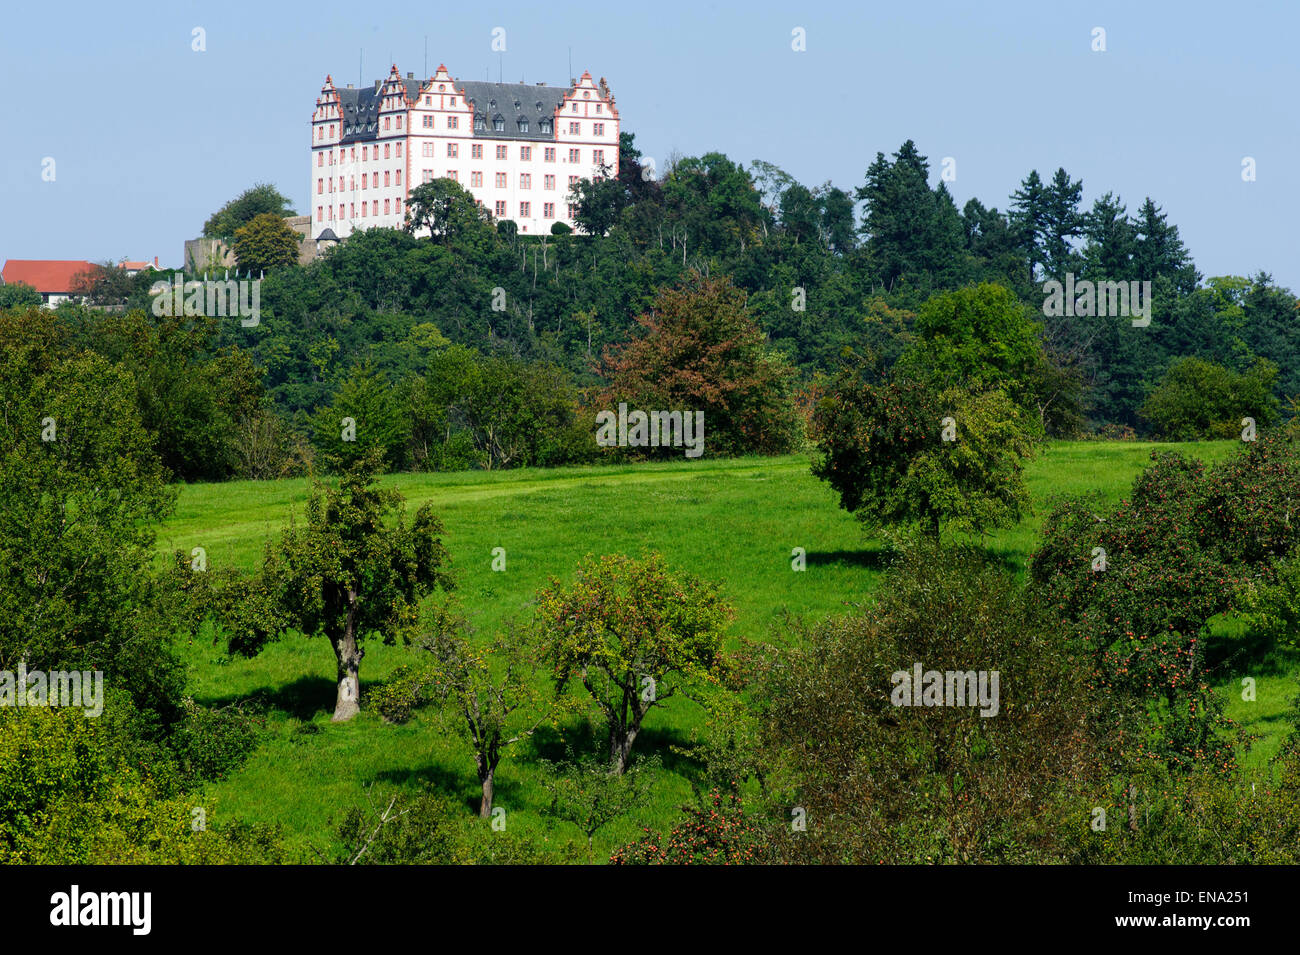 Castle Lichtenberg, Niedernhausen, Fischbachtal, Odenwald, Hesse, Germany Stock Photo